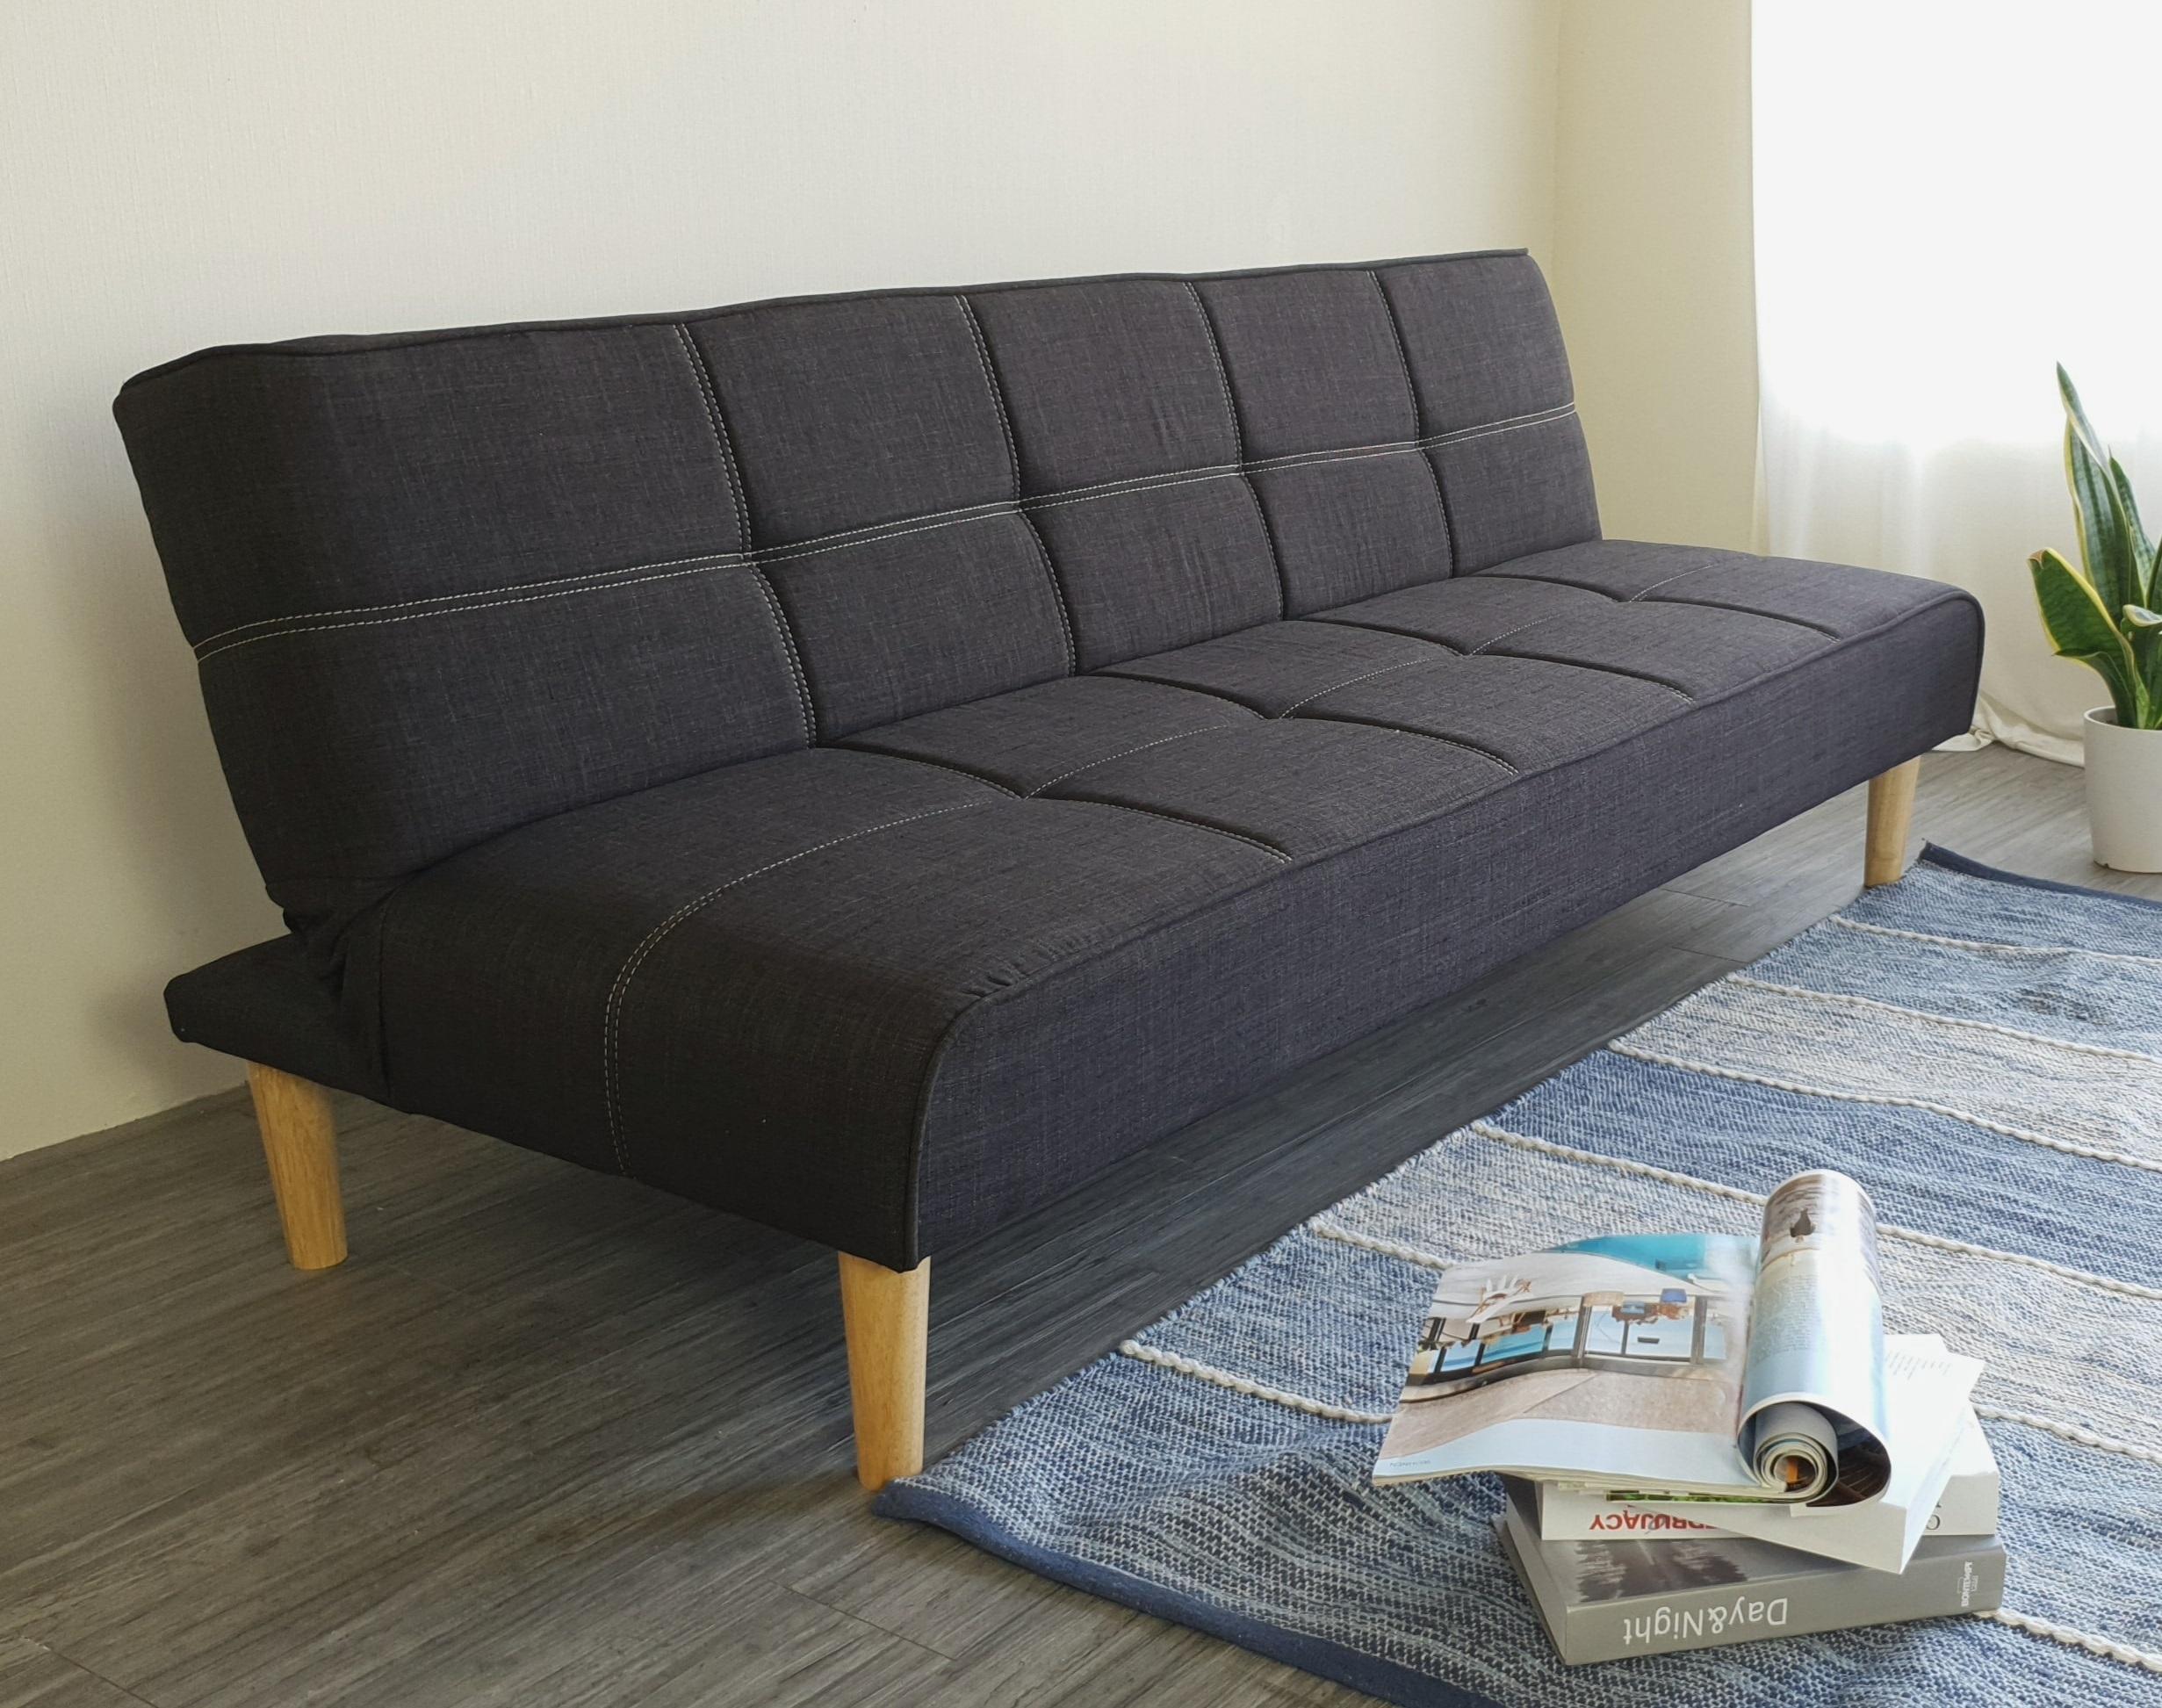 Sofa bed 3 trong 1 Juno sofa chân gỗ màu xám đen